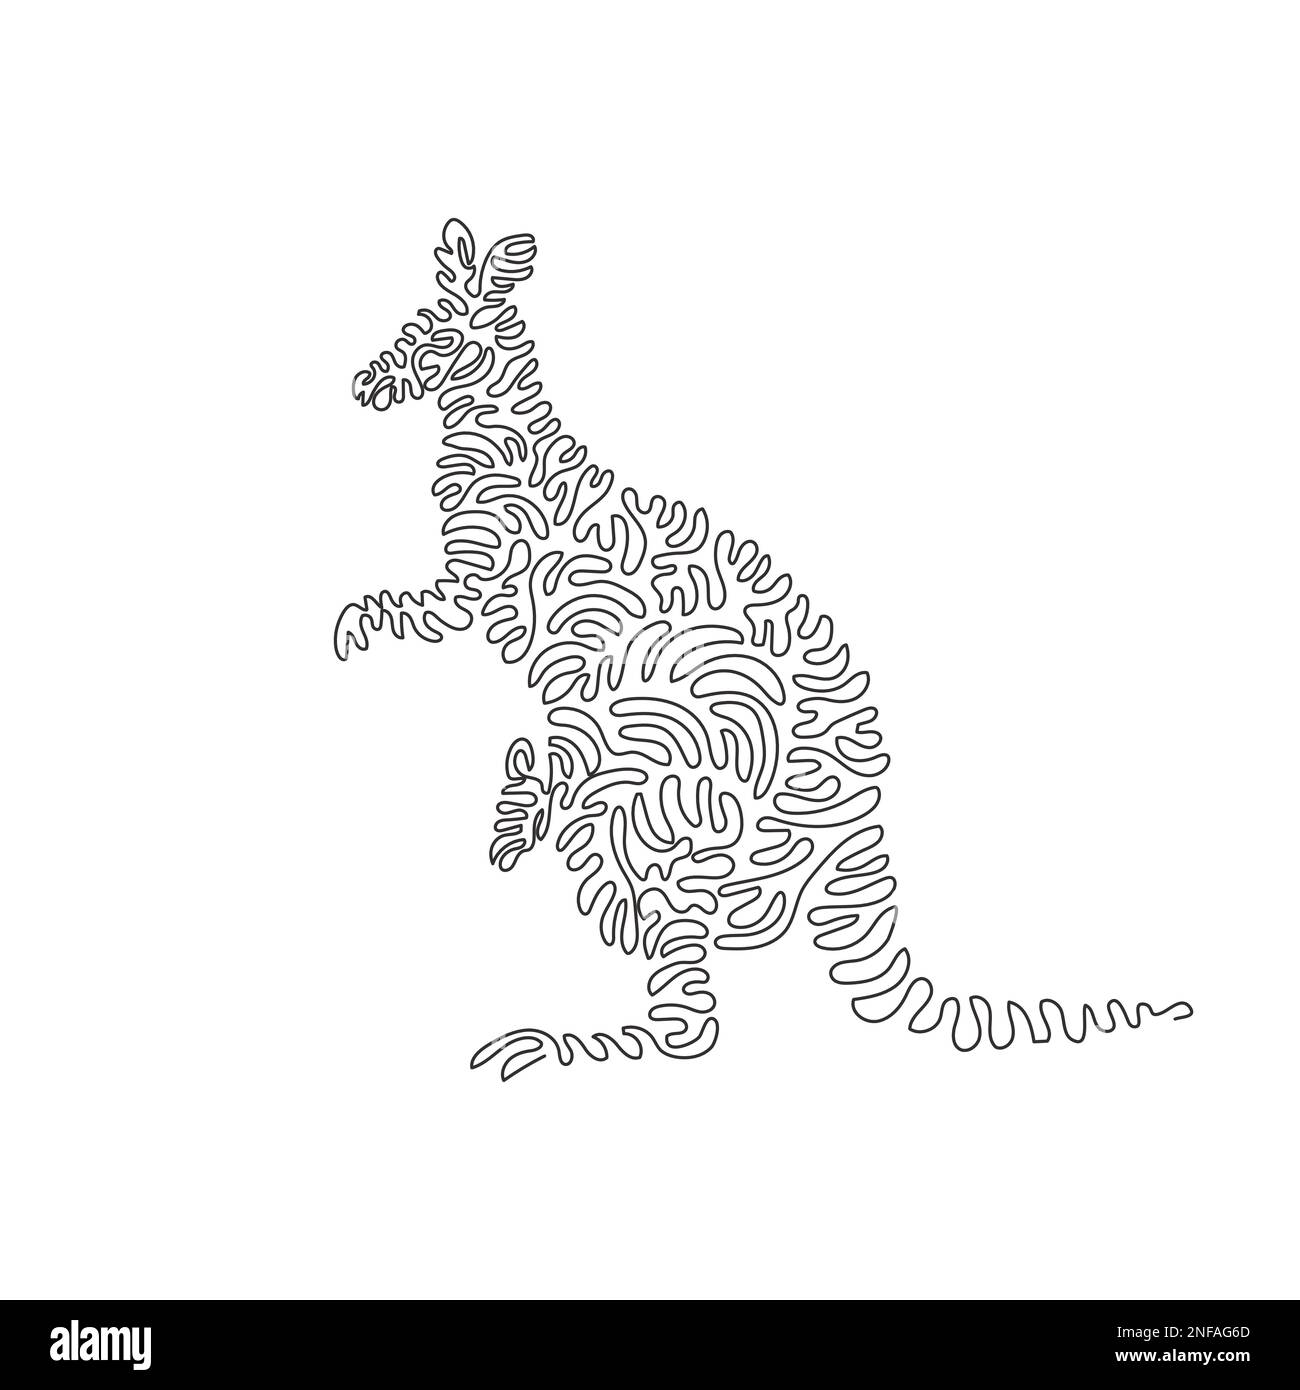 Un seul bouclé un dessin de ligne de kangourous possède des pattes arrière puissantes. Ligne continue dessin graphique dessin illustration vectorielle d'un kangourou fort Illustration de Vecteur